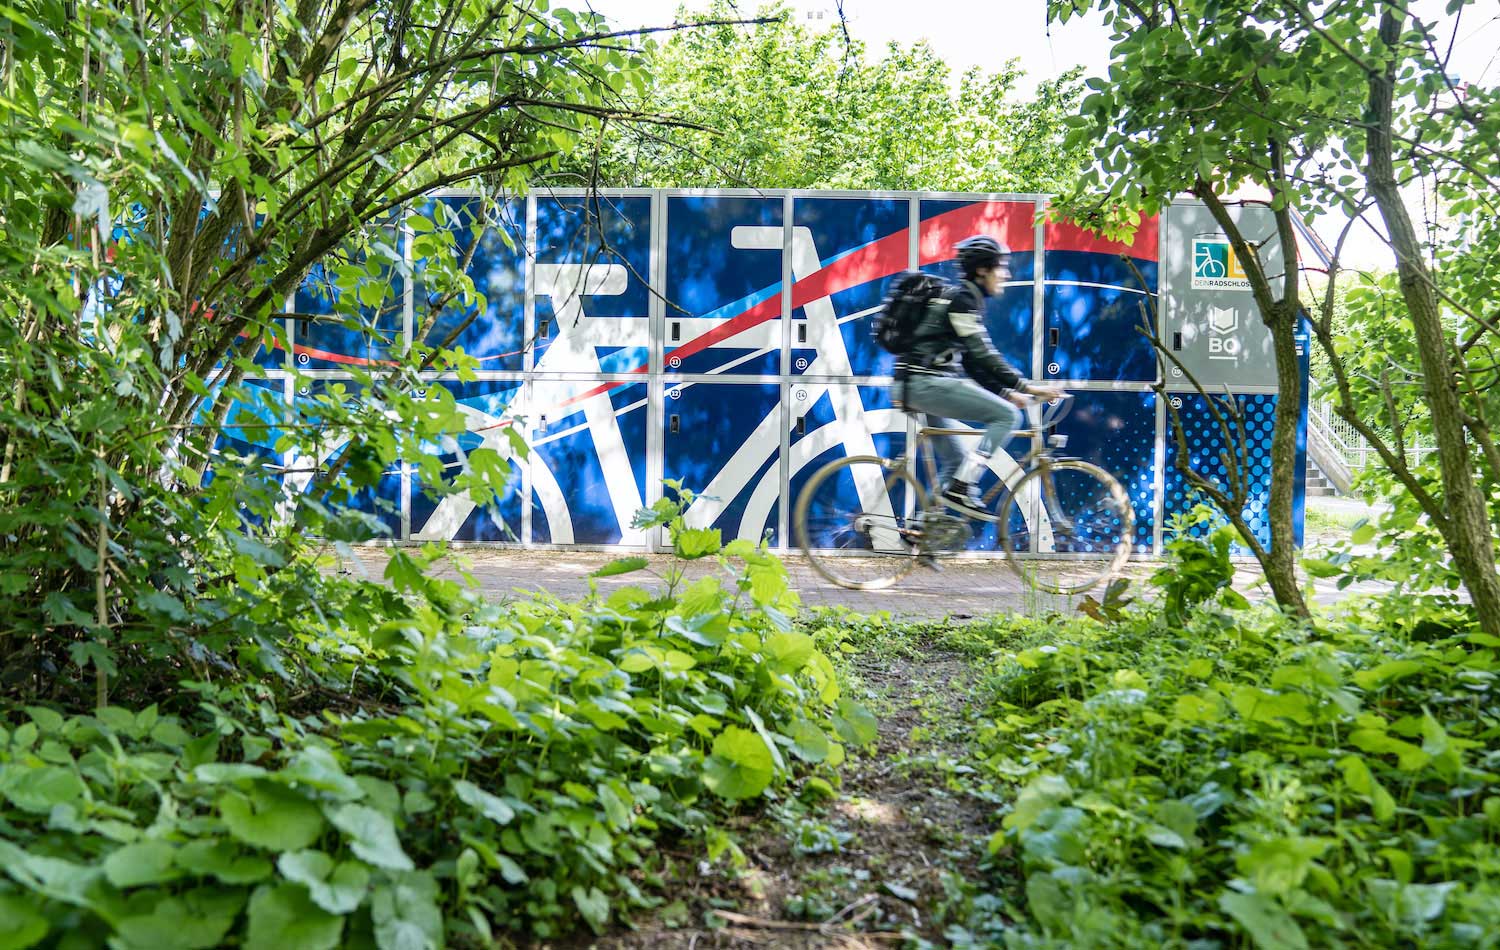 Ein Mann fährt auf einem Fahrrad an einer blauen Radbox vorbei.